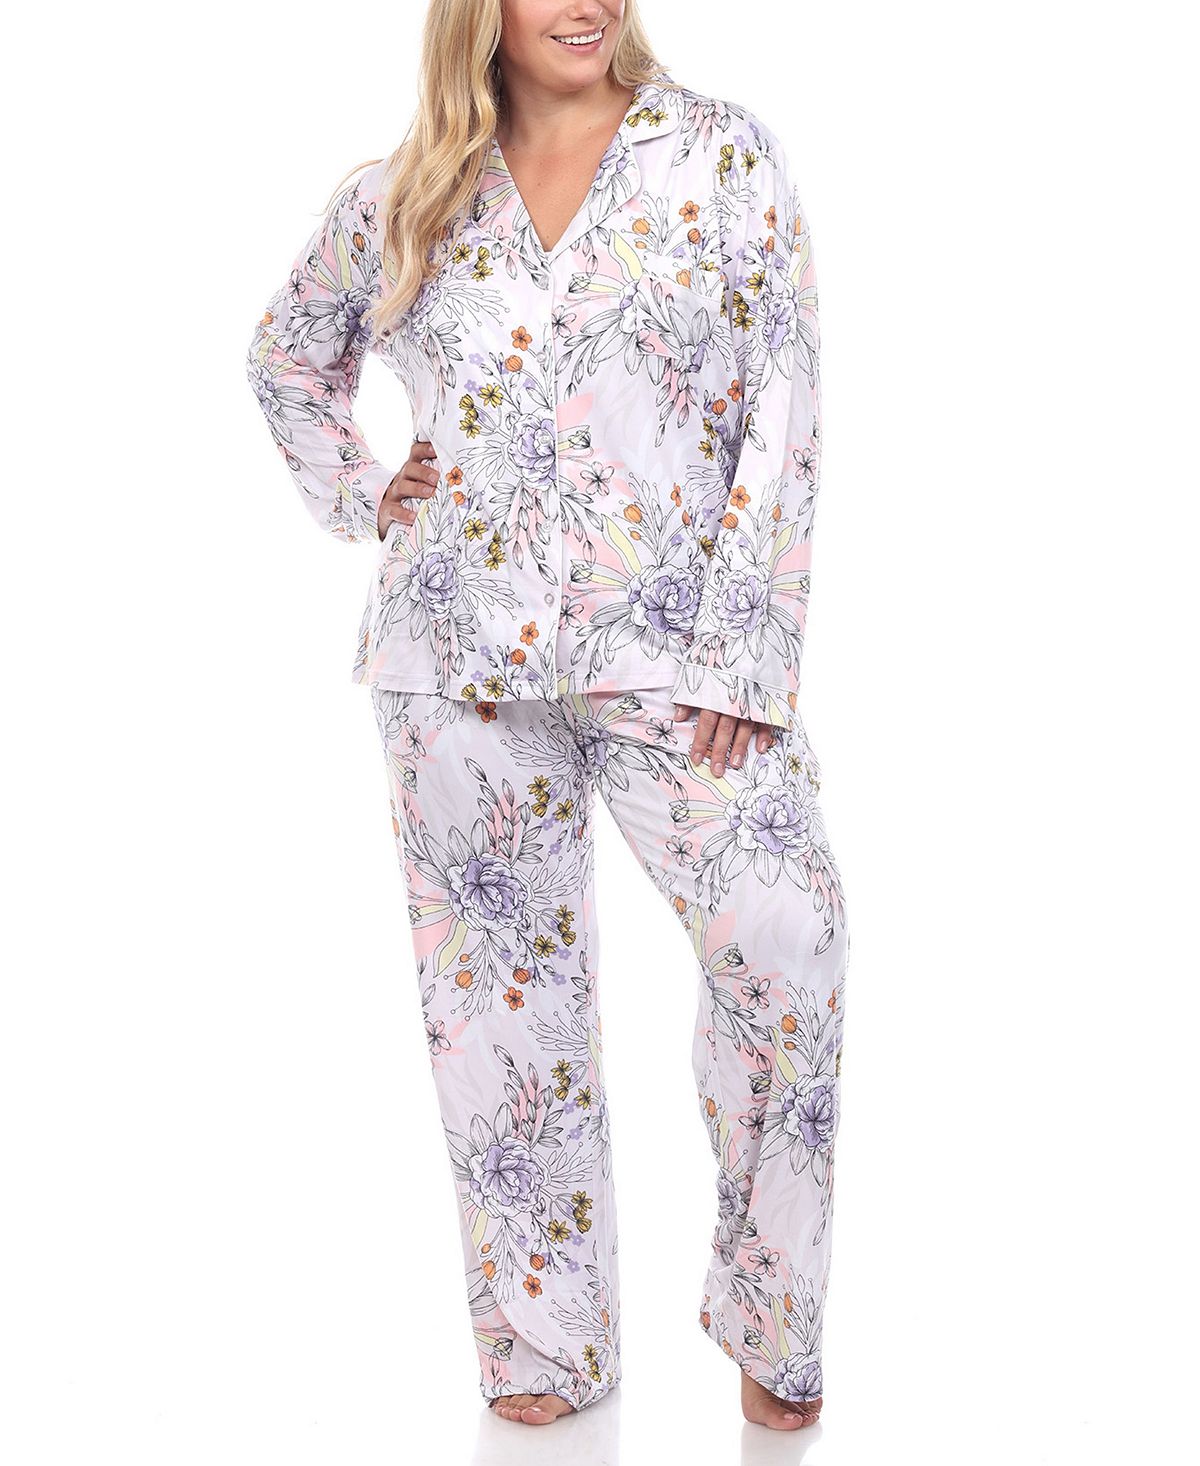 Пижамный комплект больших размеров с длинными рукавами и цветочным принтом, 2 предмета White Mark пижамный комплект больших размеров 3 предмета white mark розовый